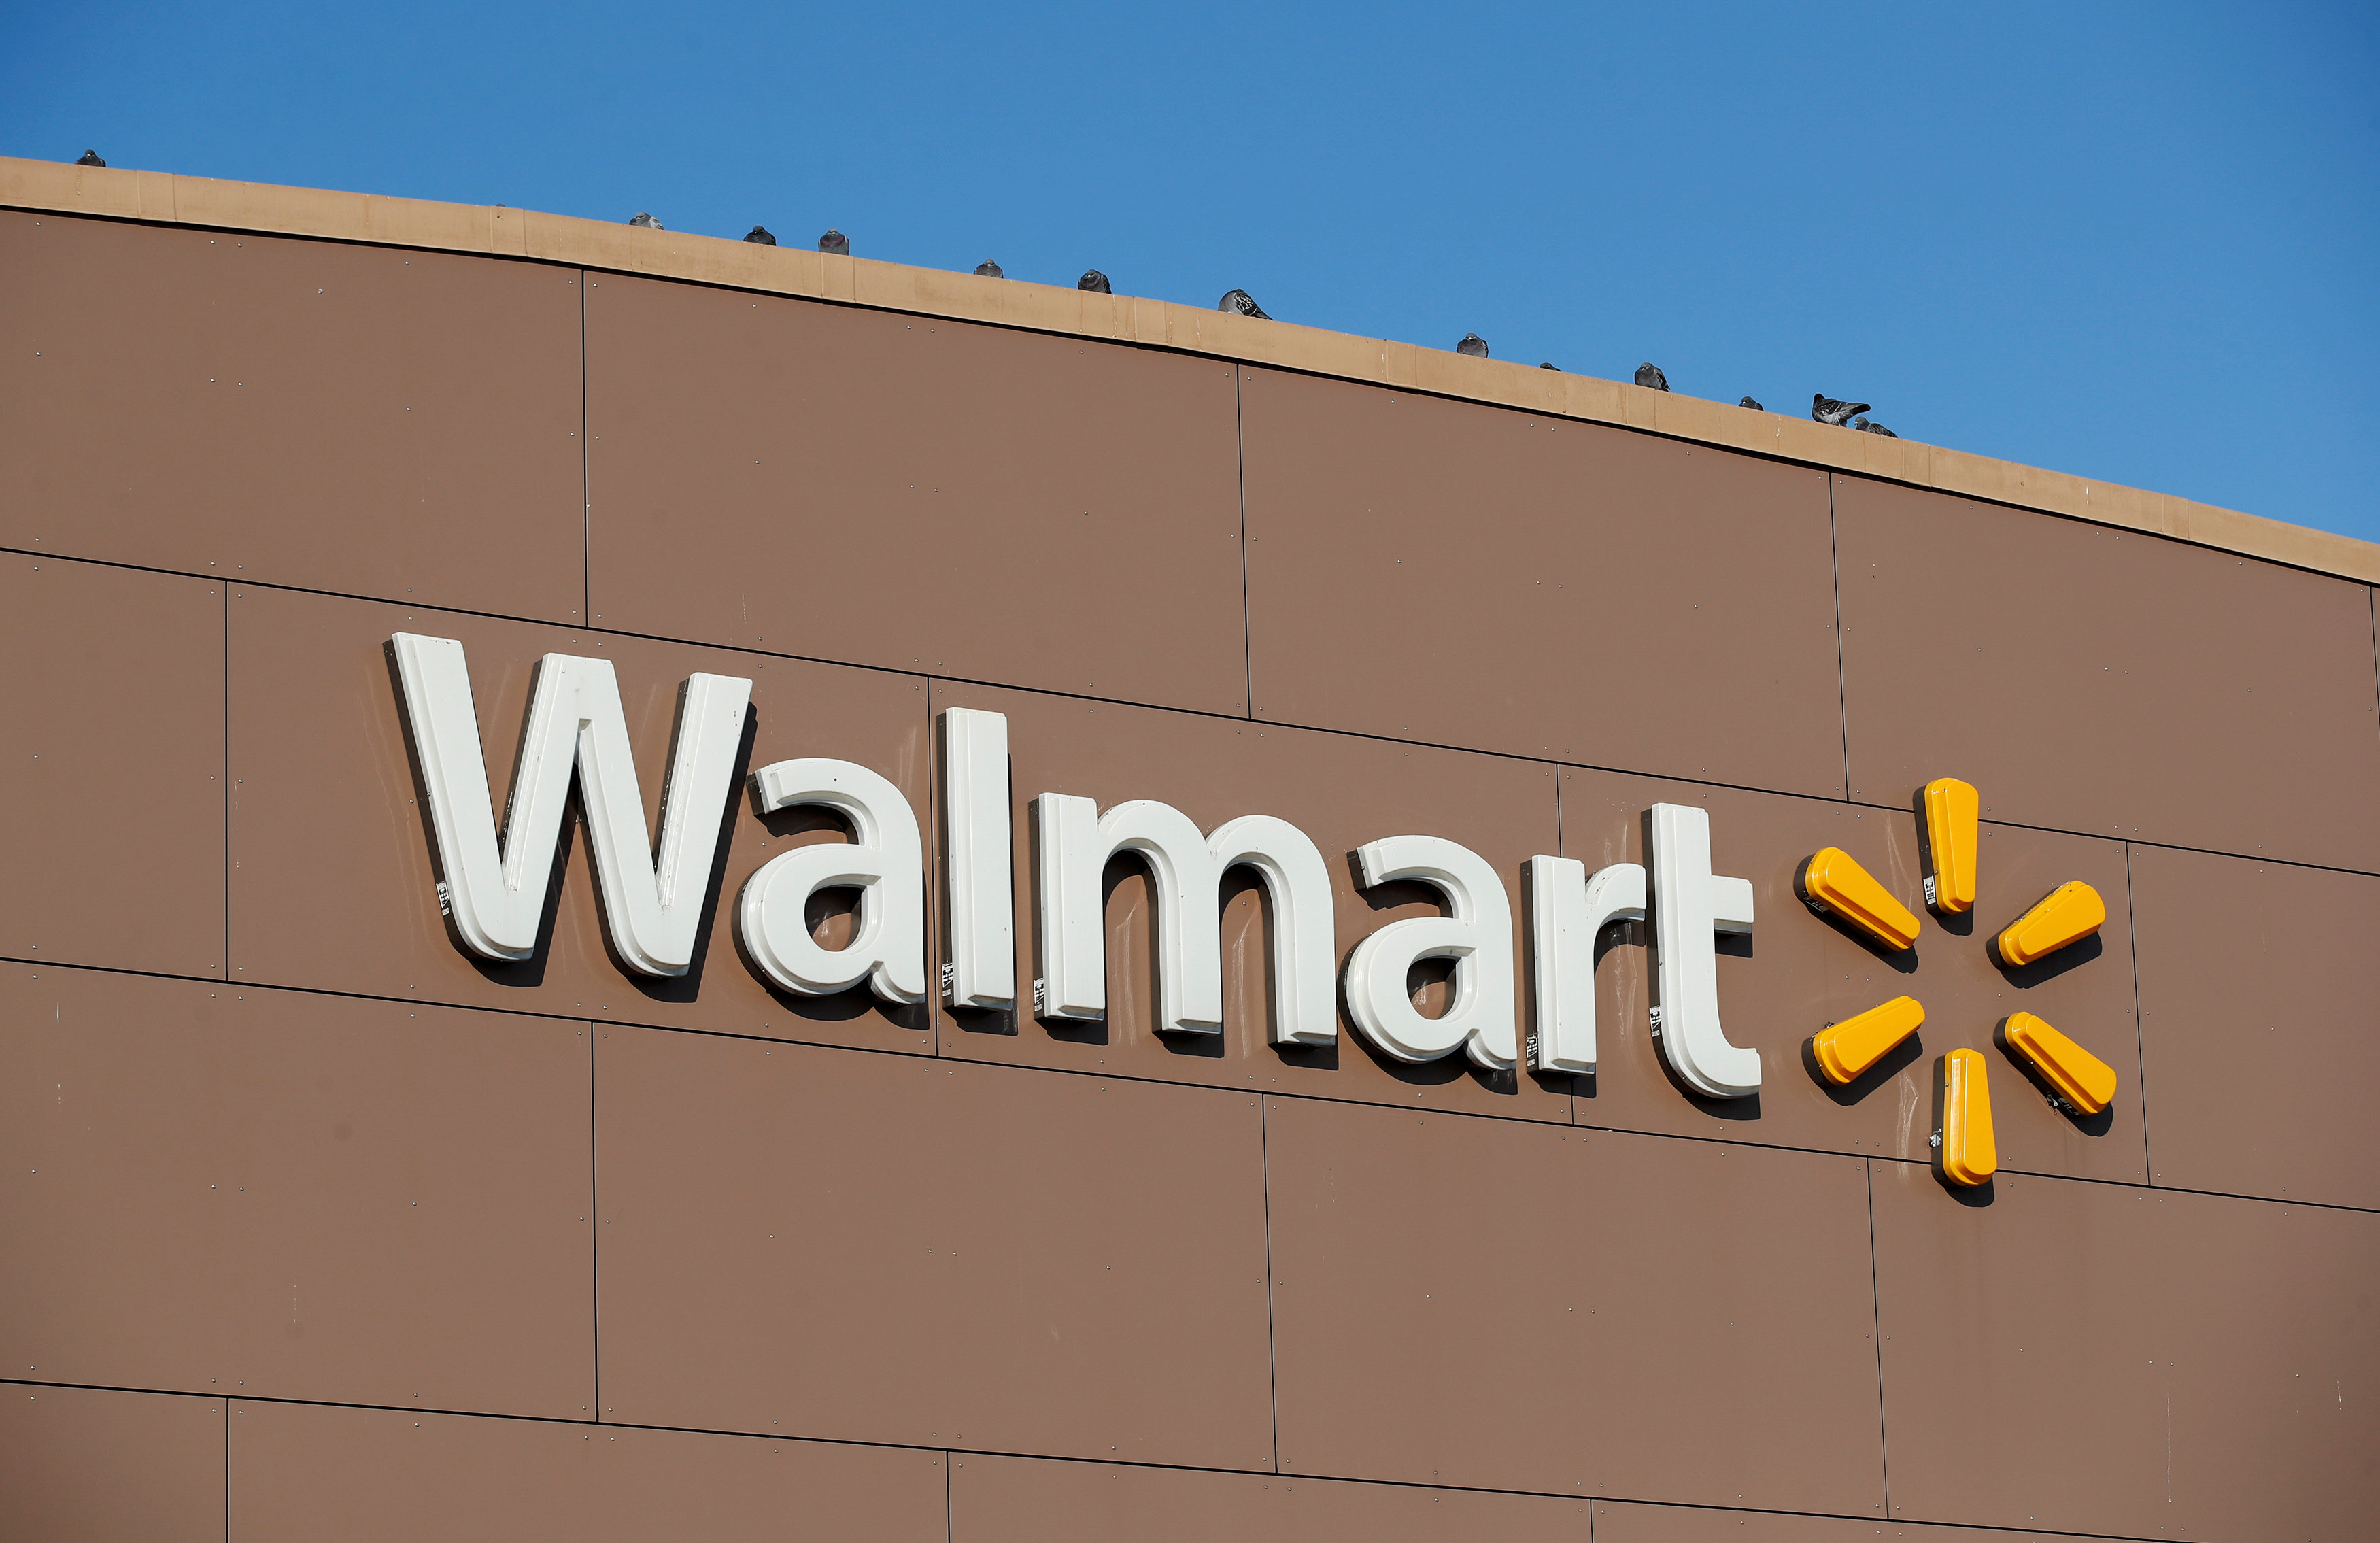 Walmart opera con normalidad, pese a posible huelga, asegura corporativo 